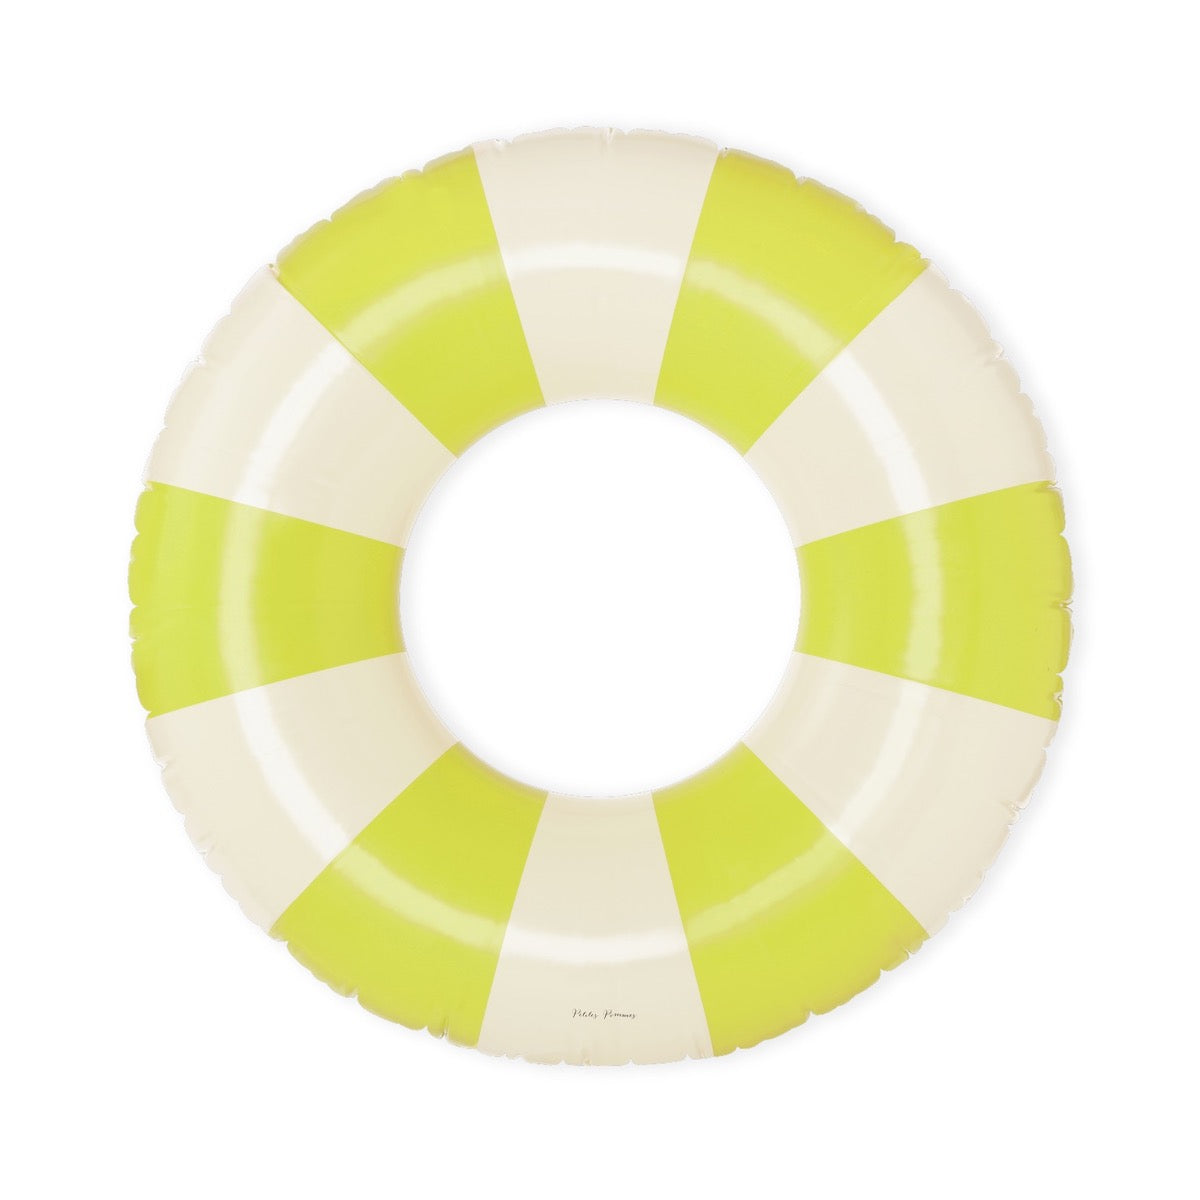 De Petites Pommes Sally zwemband in de kleur Neon (geel) is een opblaasbare zwemband met een diameter van 90cm. Deze zwemband heeft een leuk en kleurrijk ontwerp in een streep design. VanZus